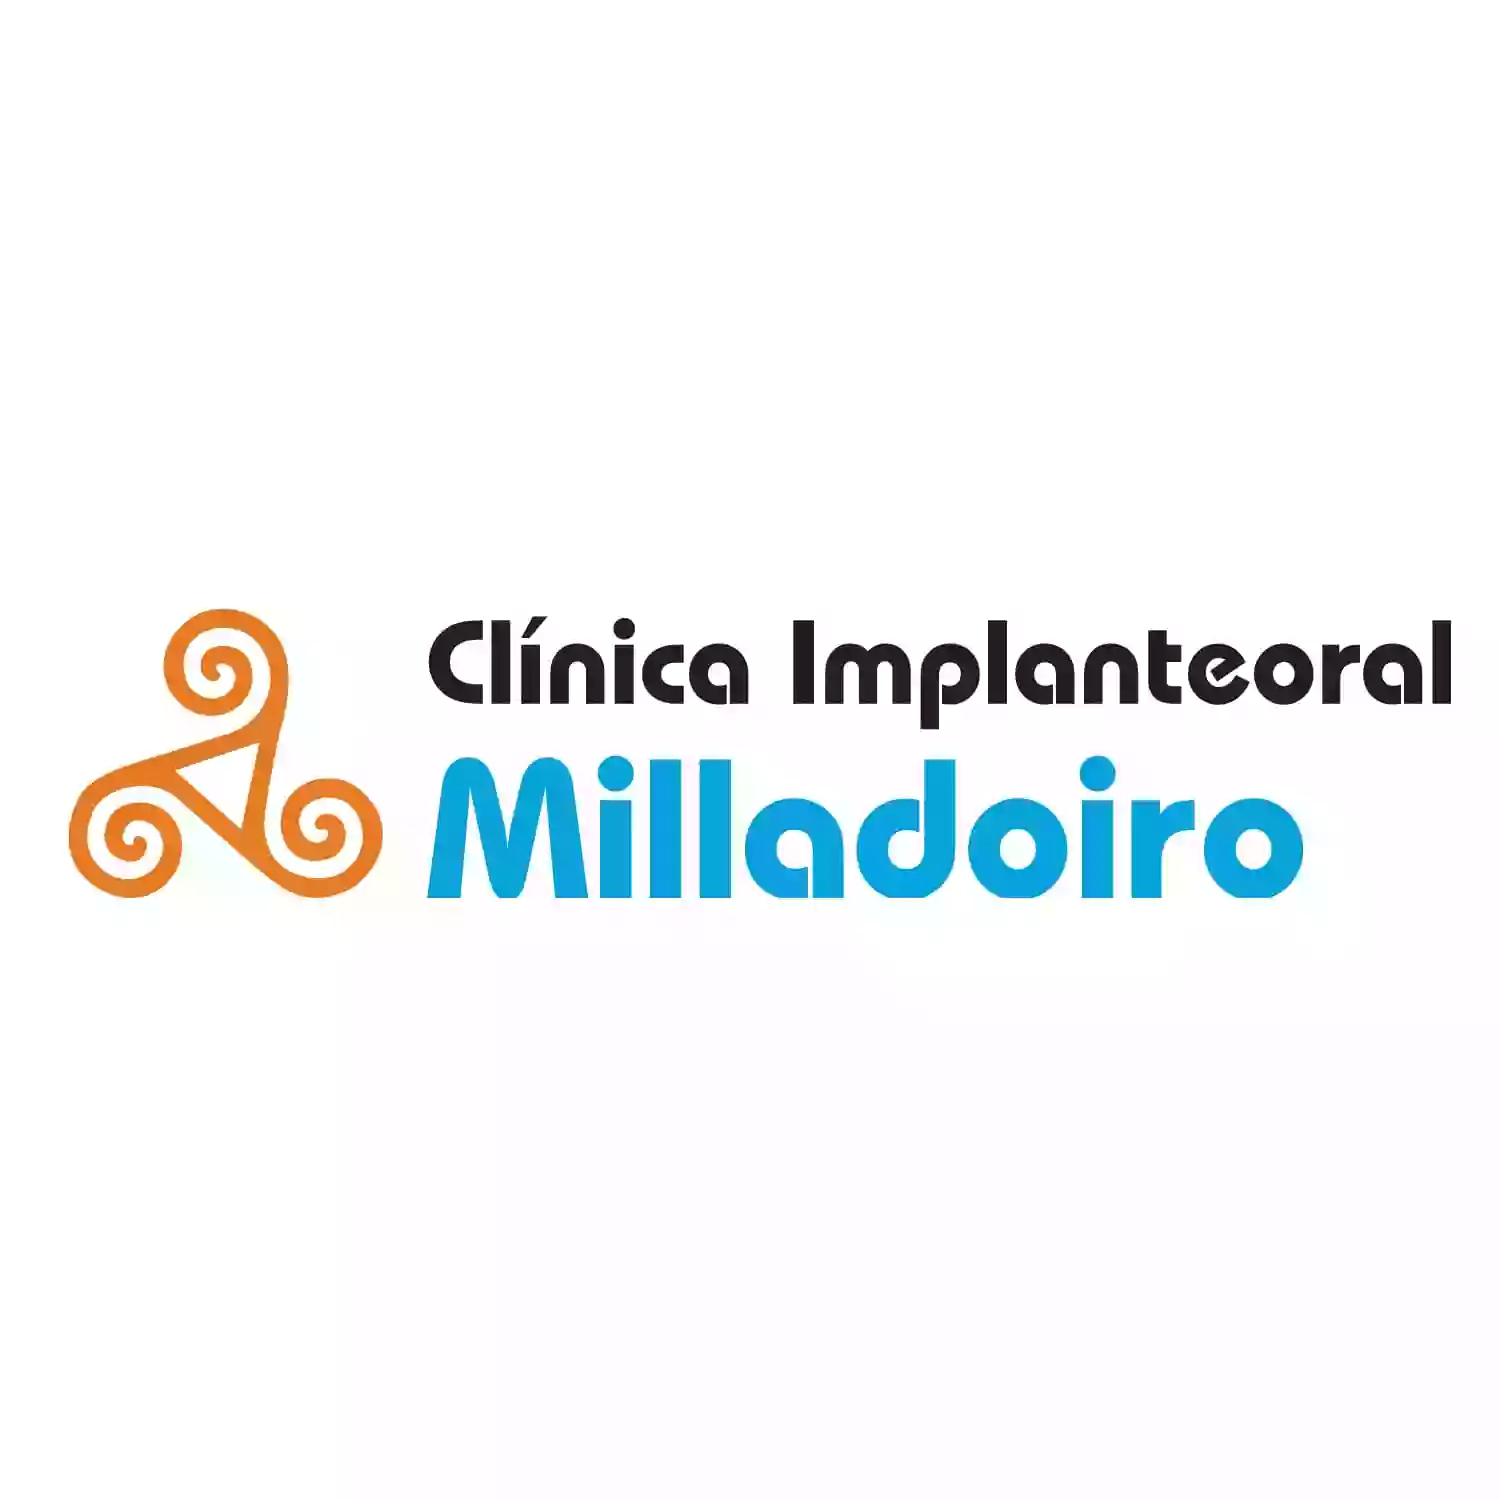 Clínica Implanteoral Milladoiro